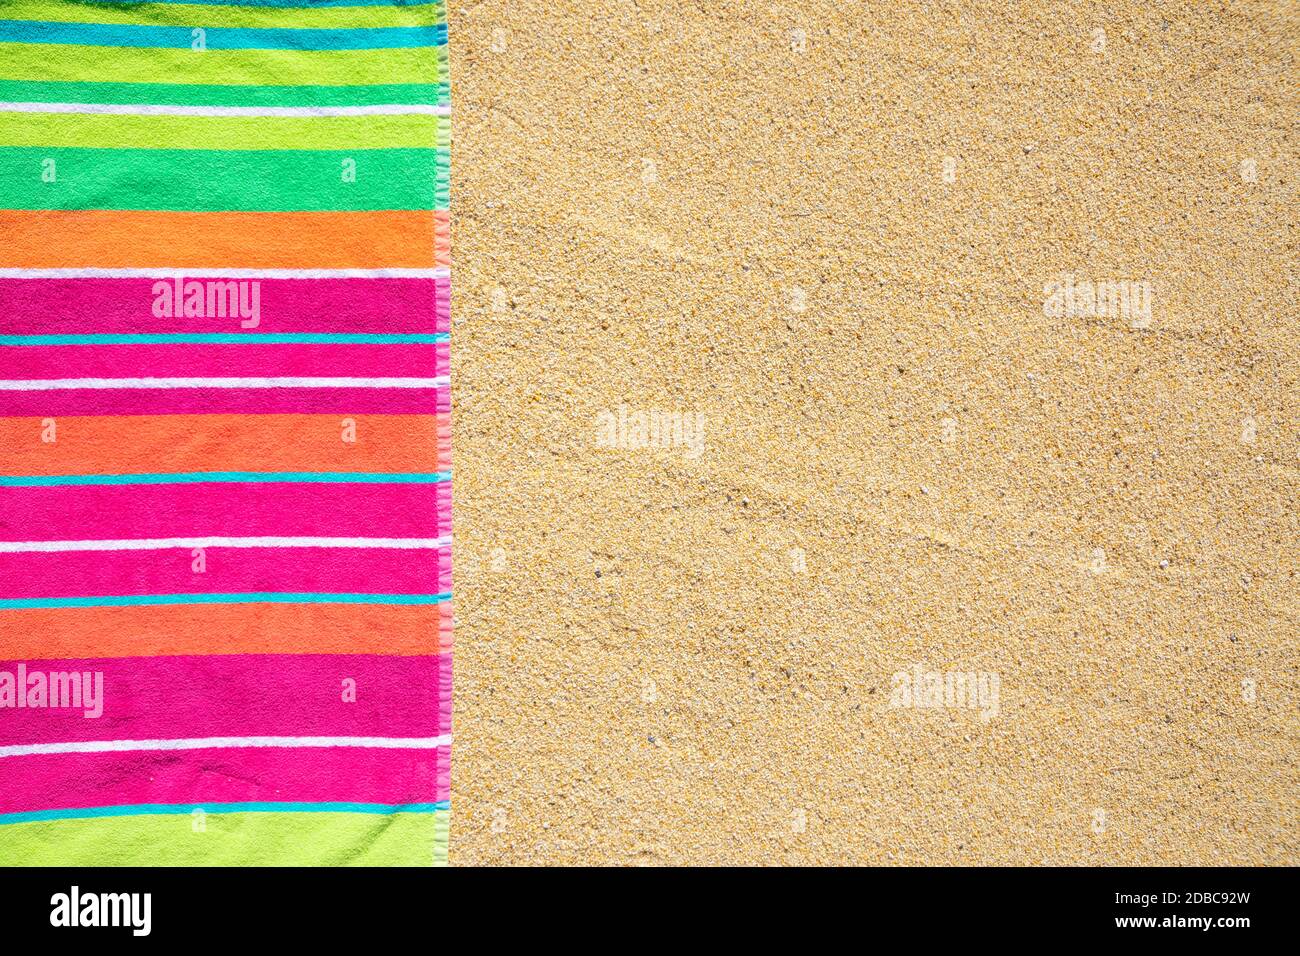 Telo da spiaggia fotografato dall'alto sulla spiaggia sabbiosa con spazio per fotocopie, caldo giorno estivo, destinazione di vacanza Foto Stock